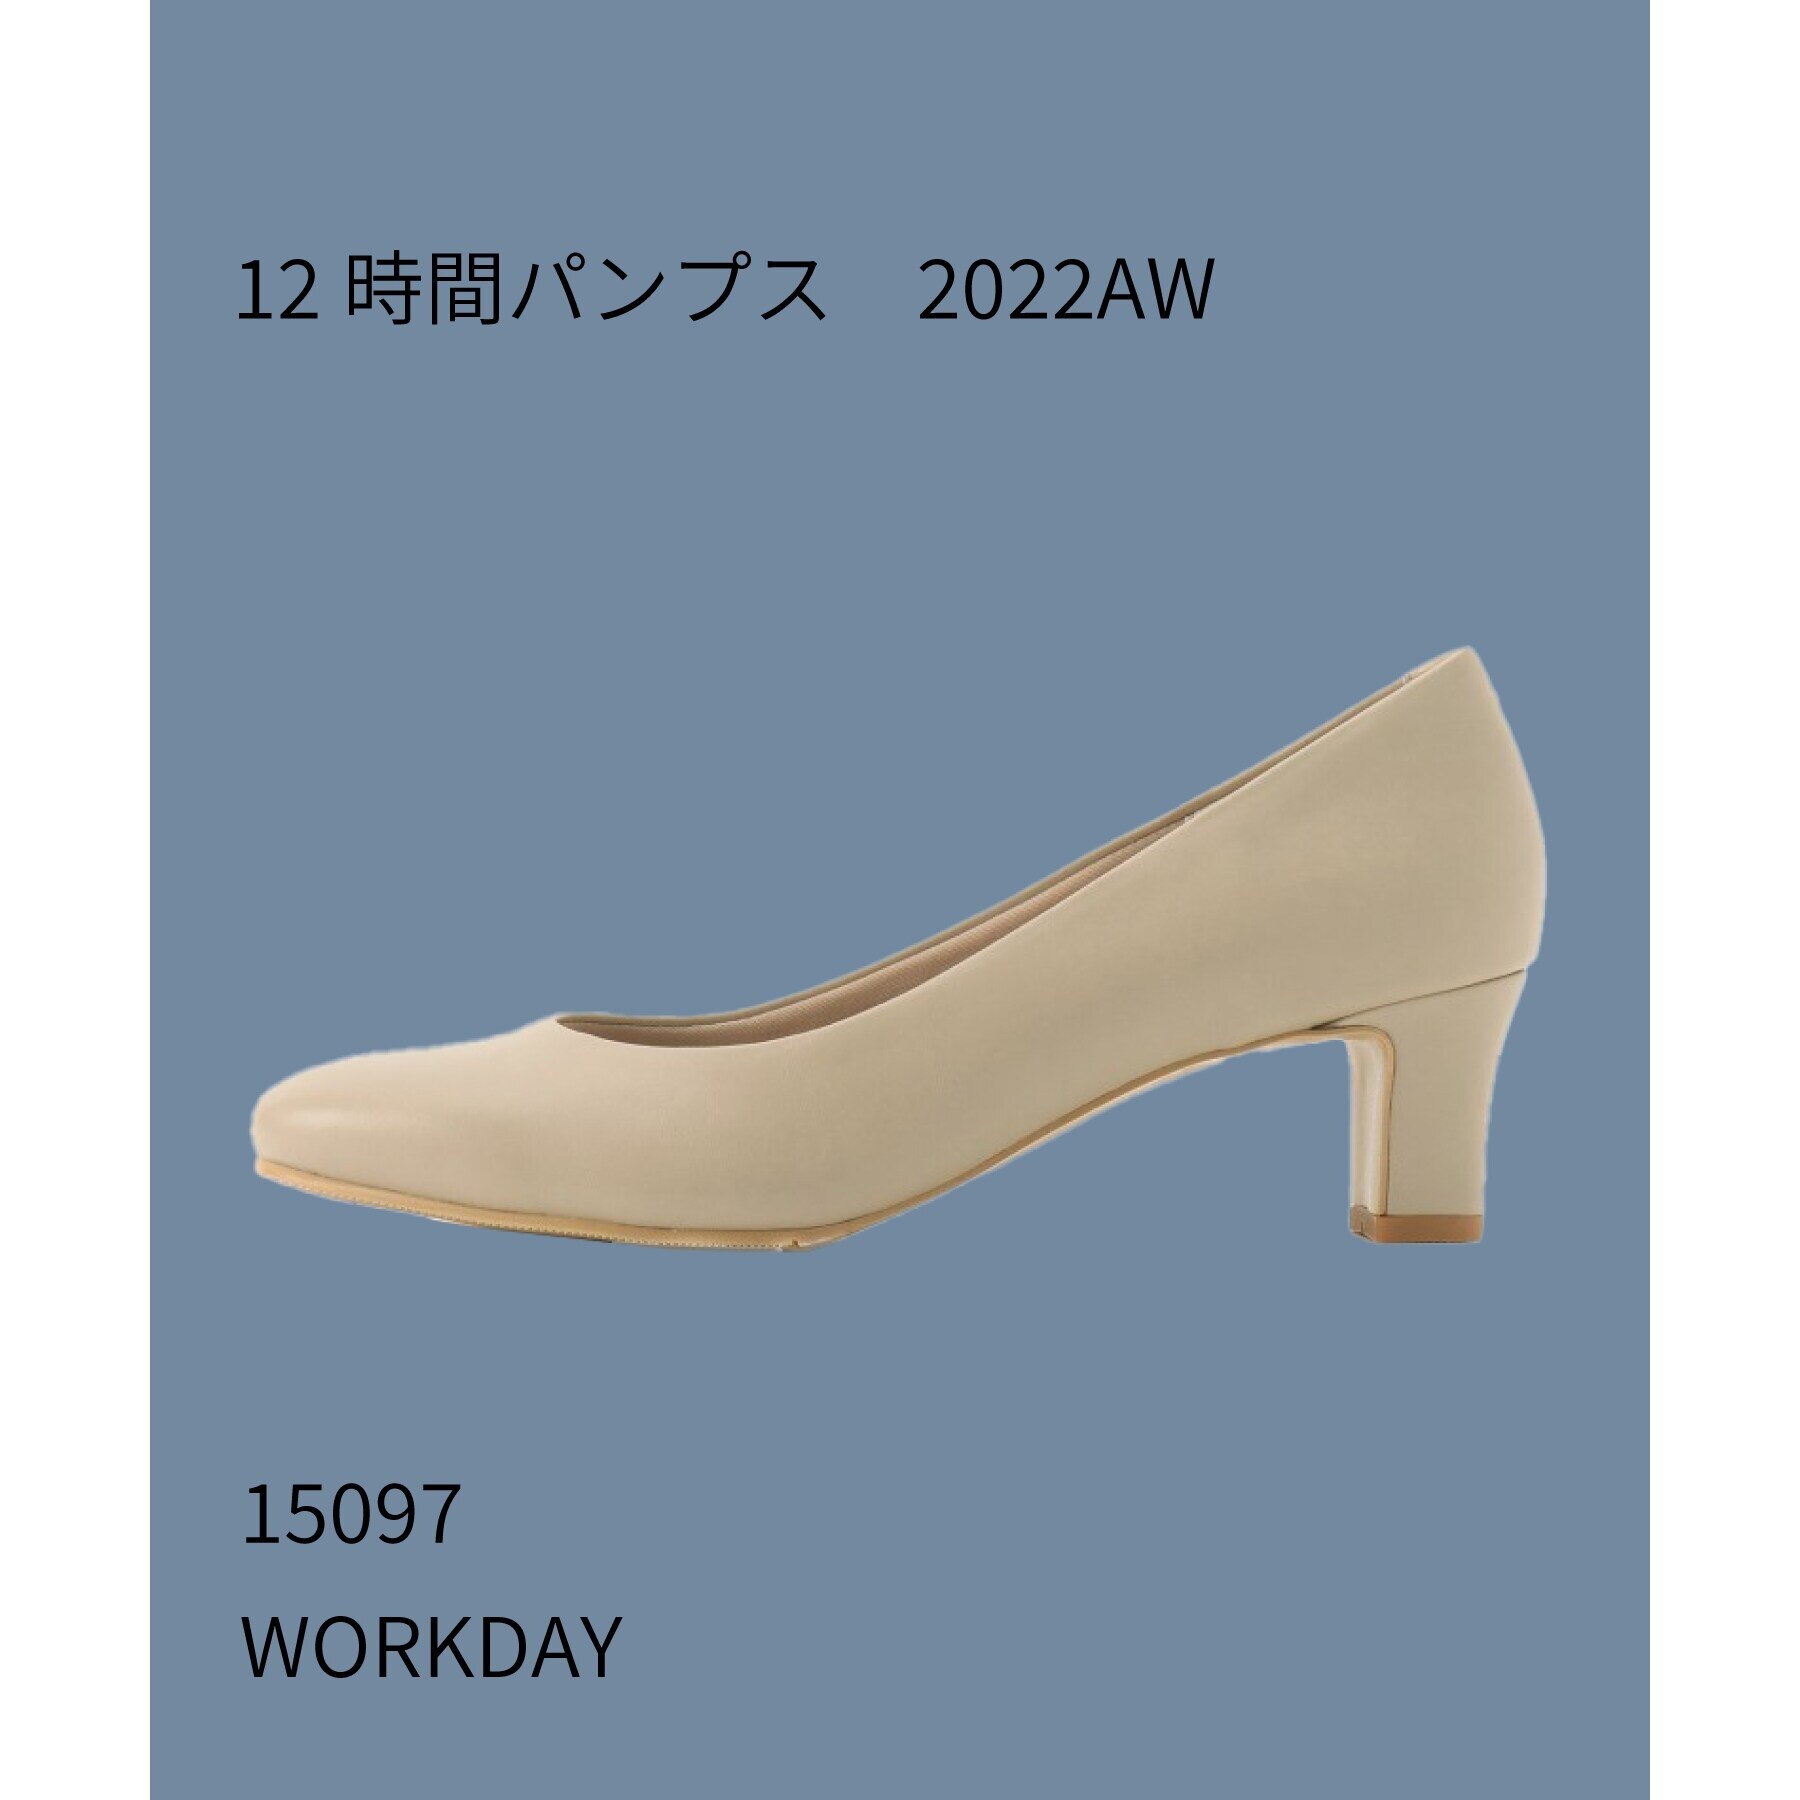 【日本製】晴雨兼用12時間パンプス5.0cmヒールソフトスクエアバージョン